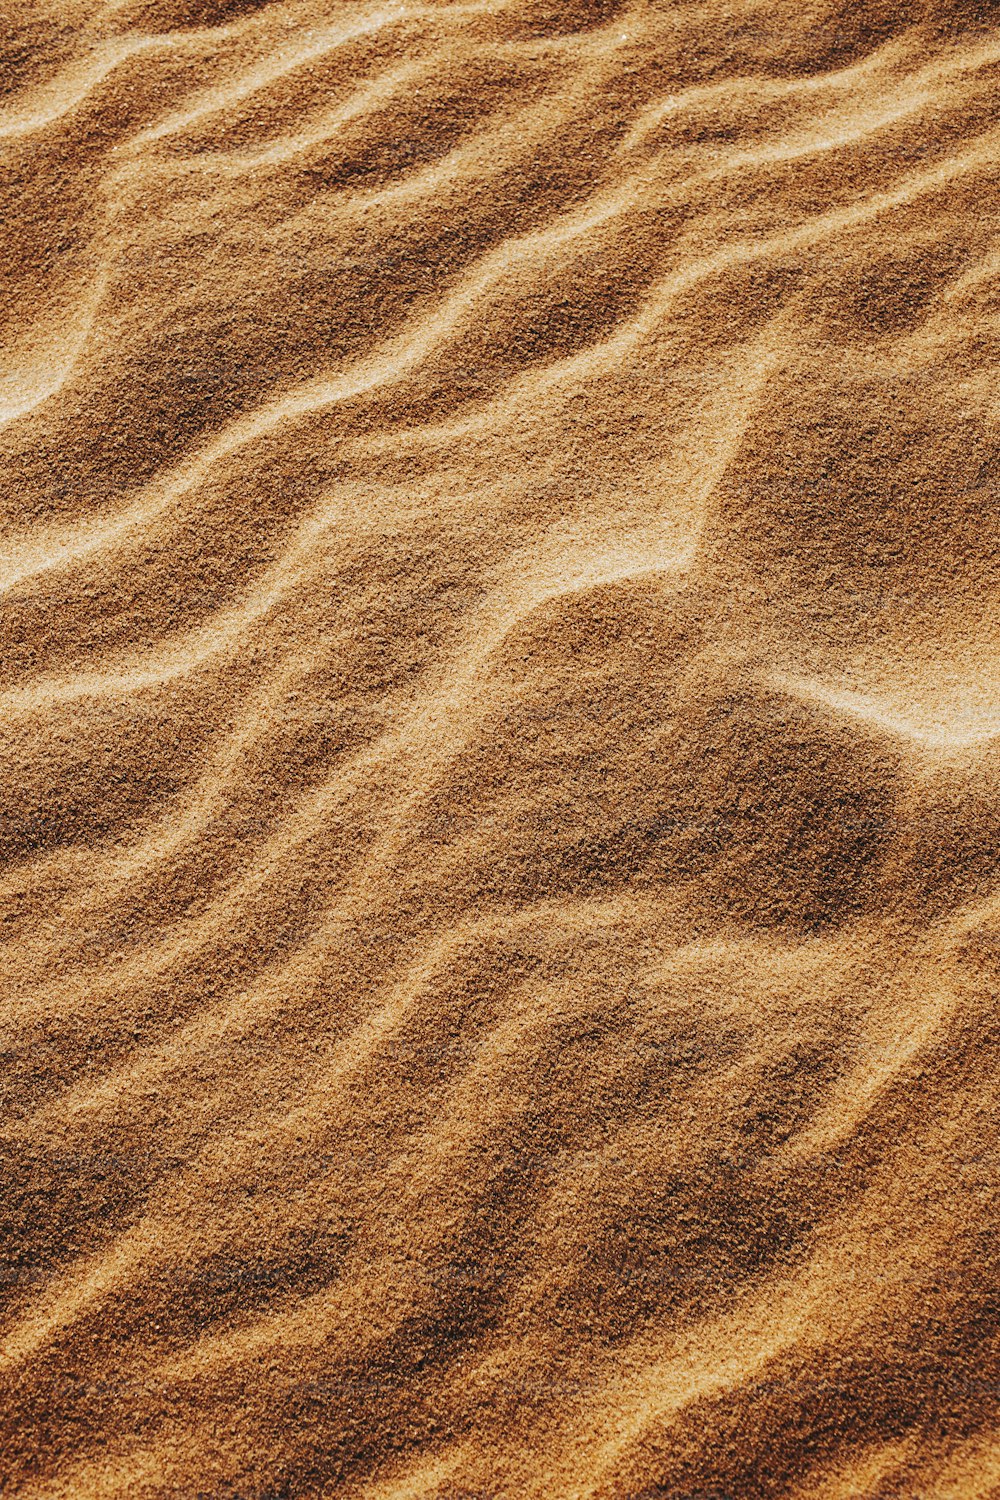 une plage de sable recouverte de beaucoup de sable